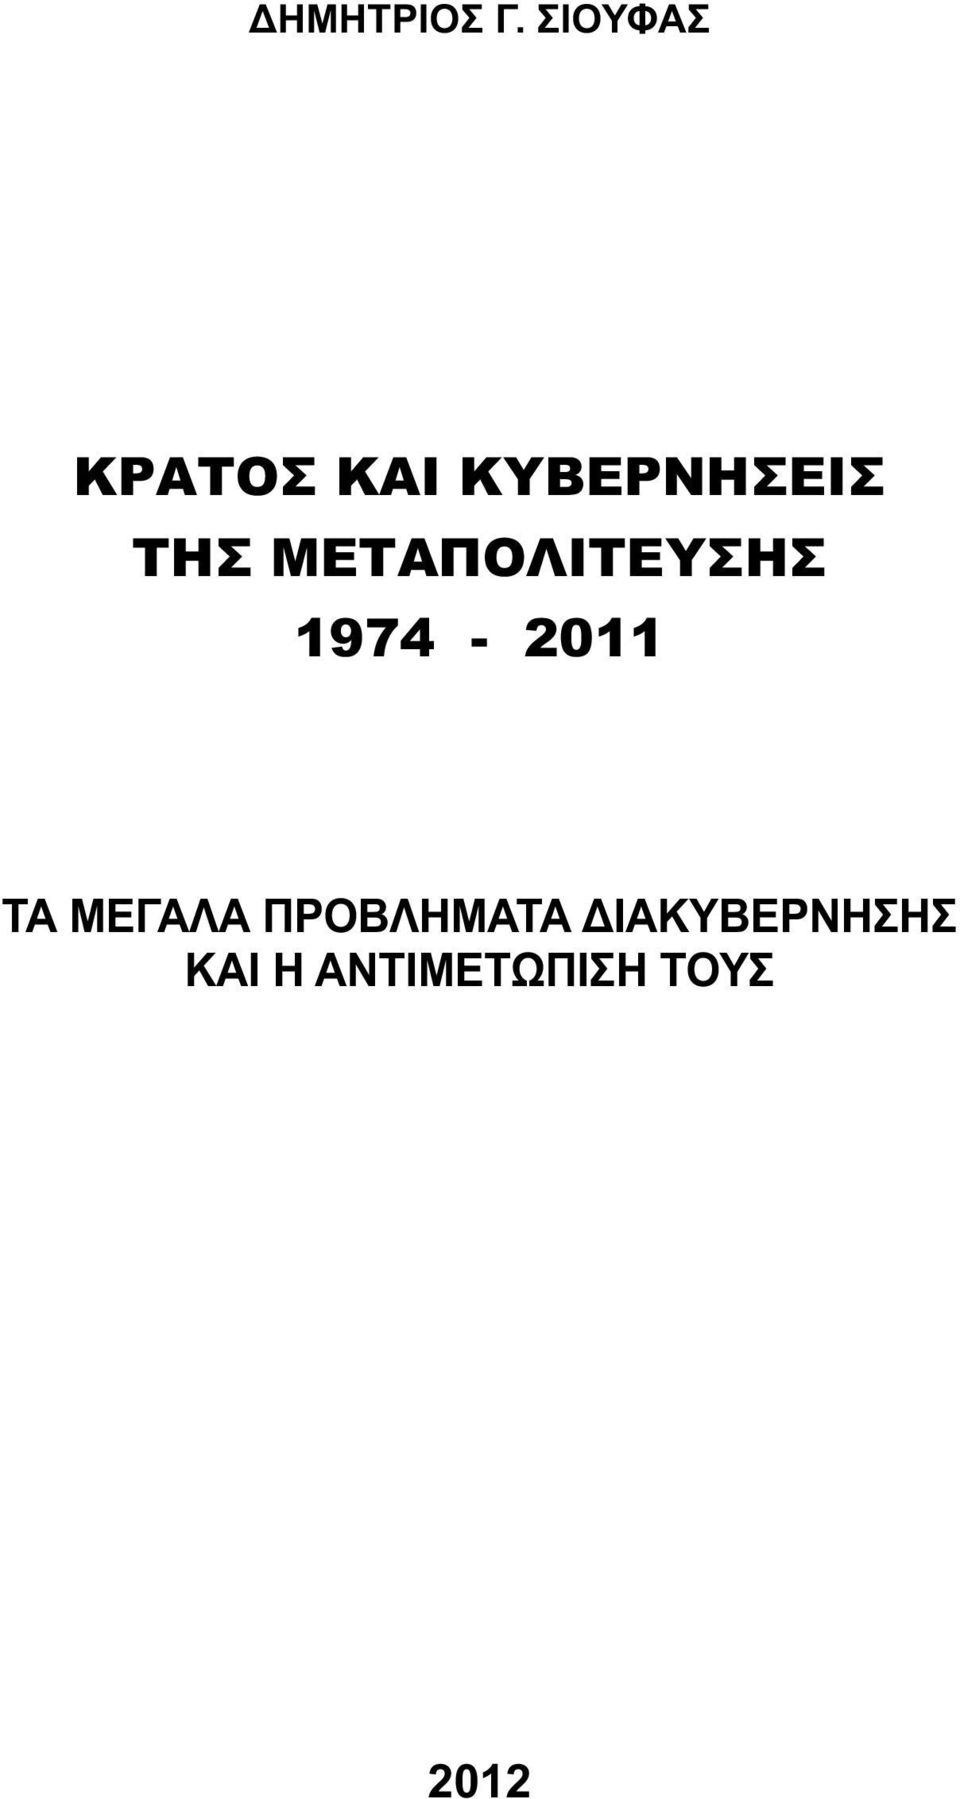 ΤΗΣ ΜΕΤΑΠΟΛΙΤΕΥΣΗΣ 1974-2011 ΤΑ